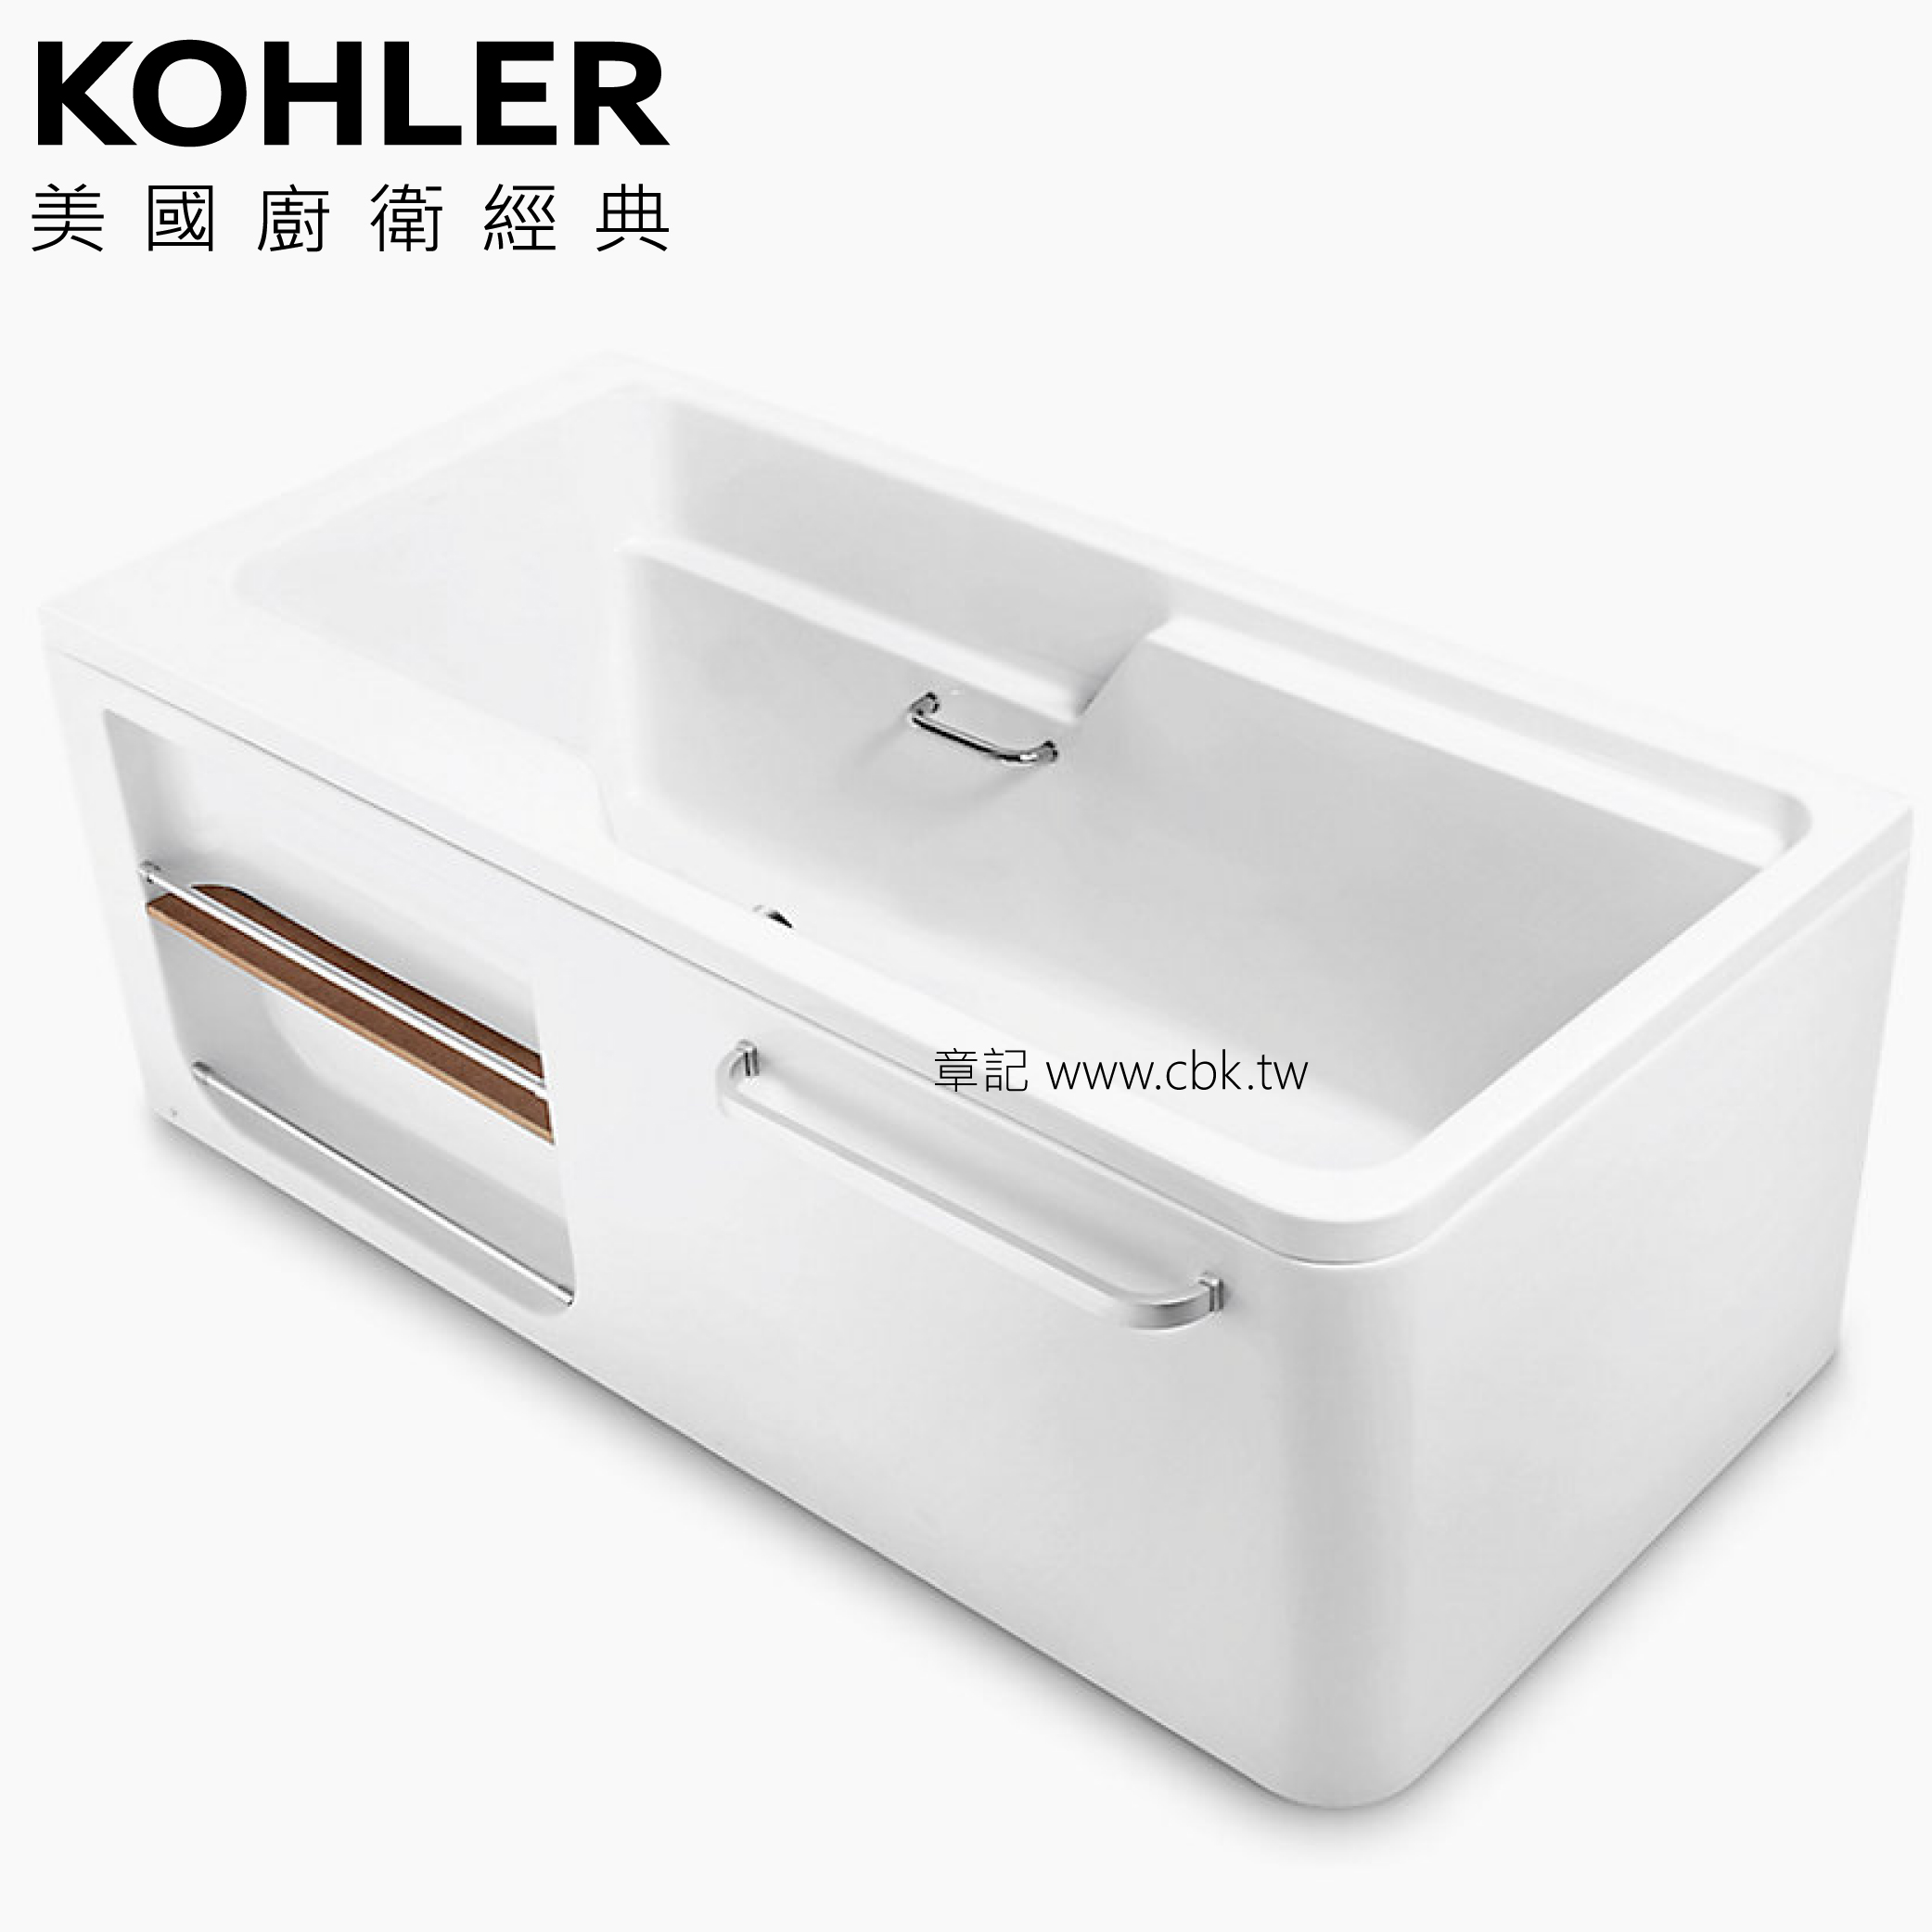 KOHLER ALEUTIAN 壓克力整體化浴缸(130cm) K-99013T-0_K-99014T-0 